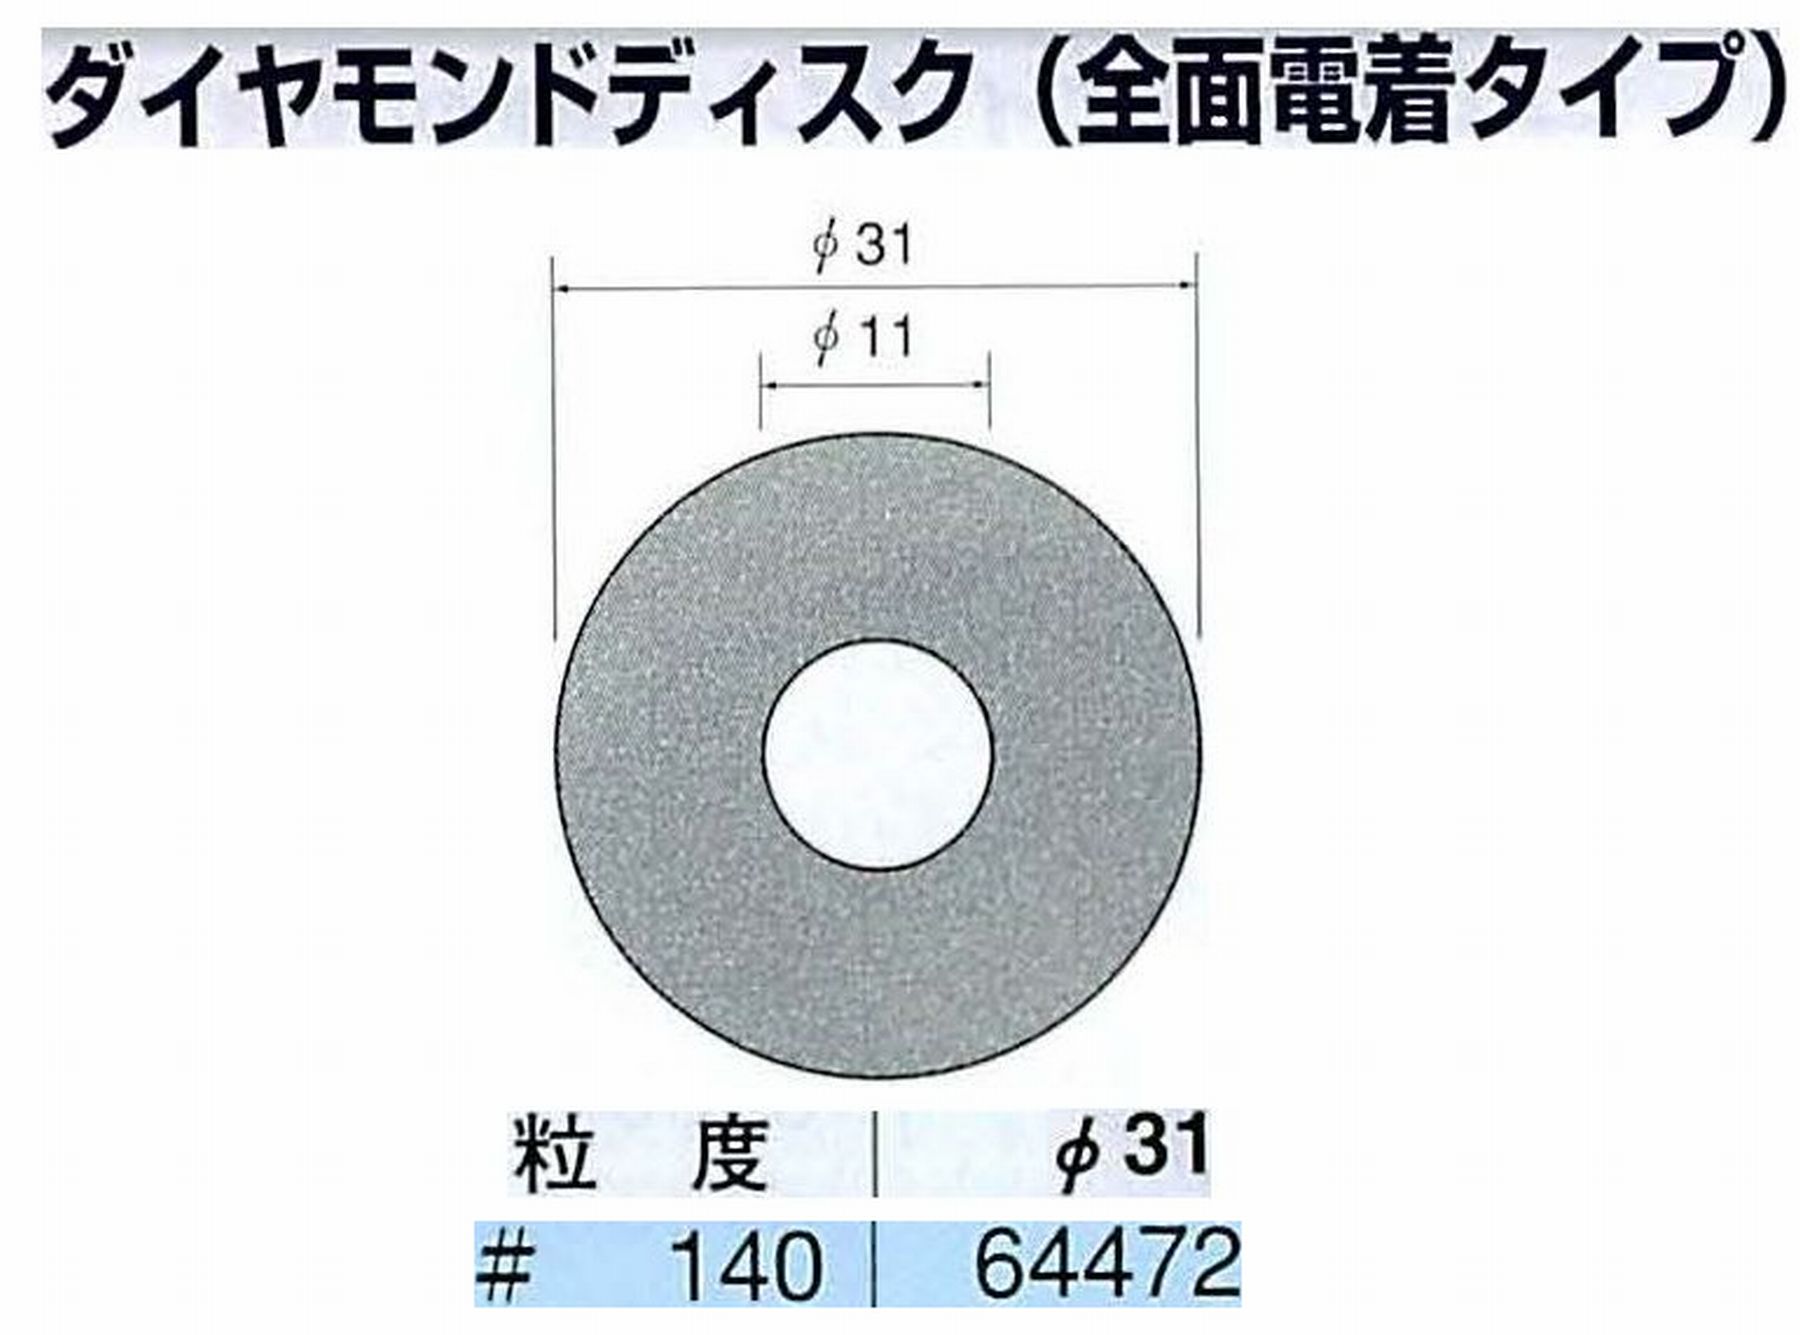 ナカニシ/NAKANISHI アングルグラインダ(電動・エアー) アングルアタッチメント専用工具 ダイヤモンドディスク(全面電着タイプ) 64472